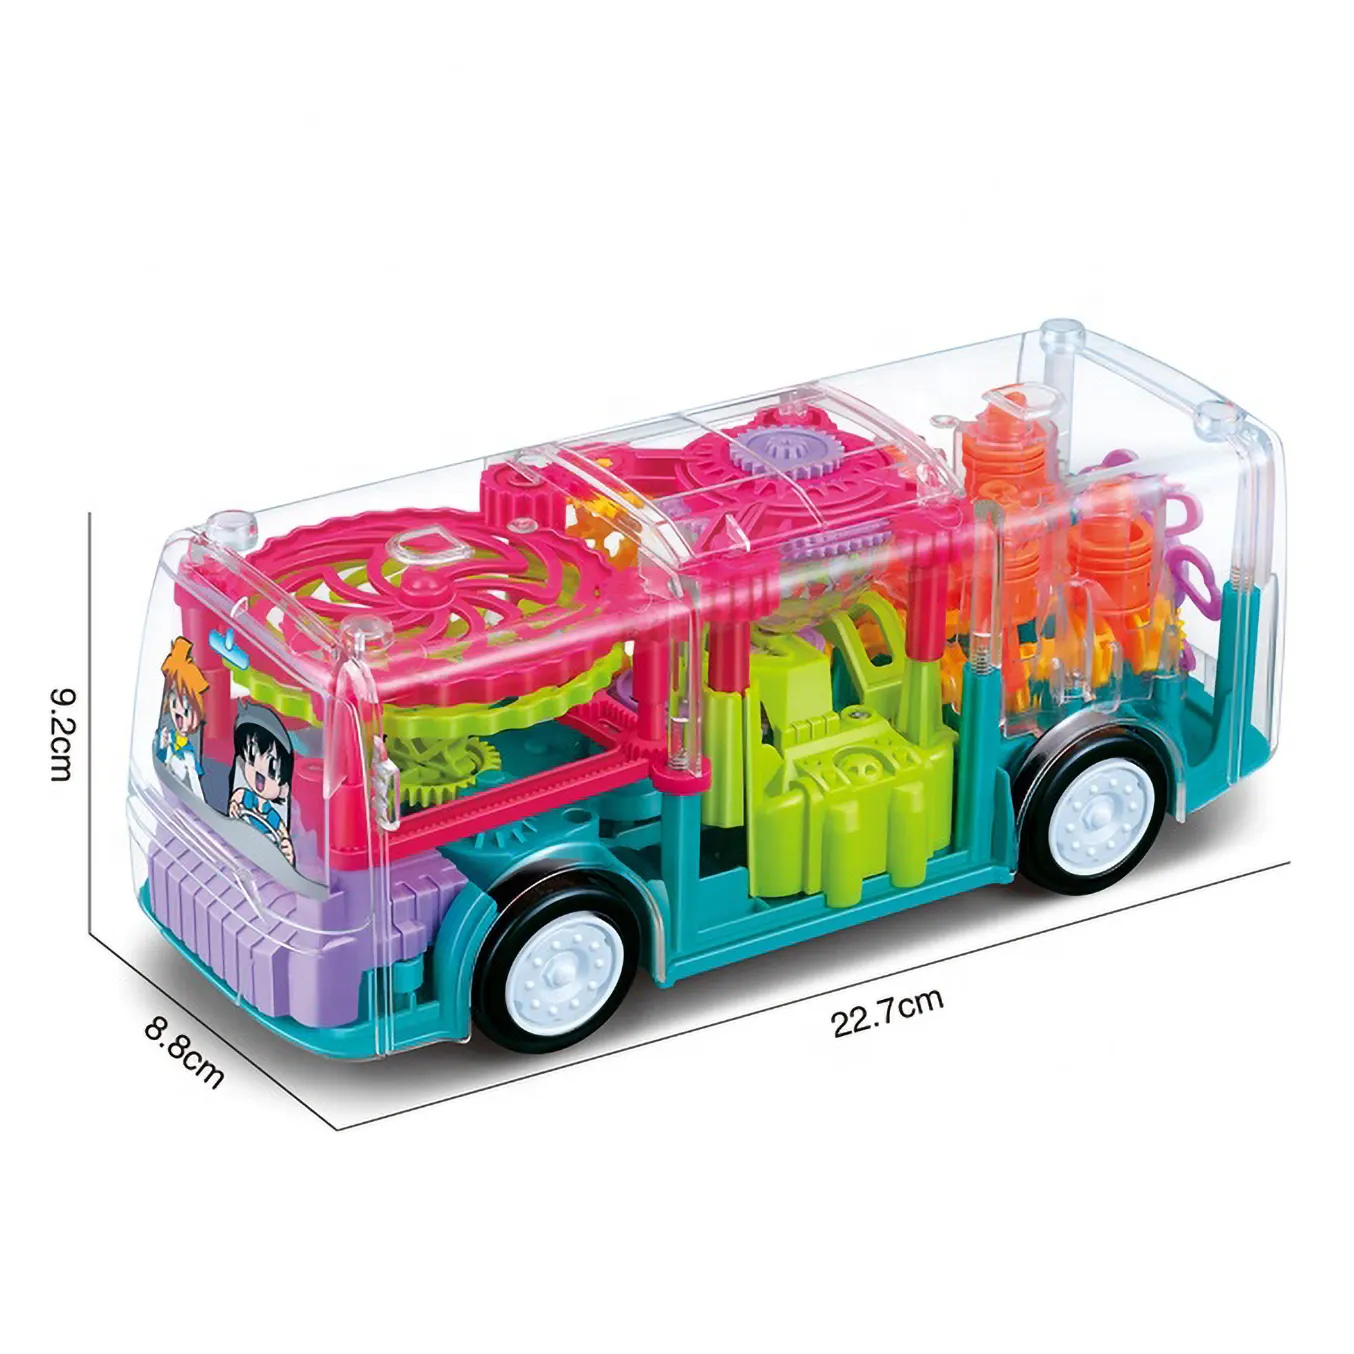 キッズ透明ギアカー電気ユニバーサルミュージックライトシミュレーションモデル赤ちゃんキッズおもちゃバス